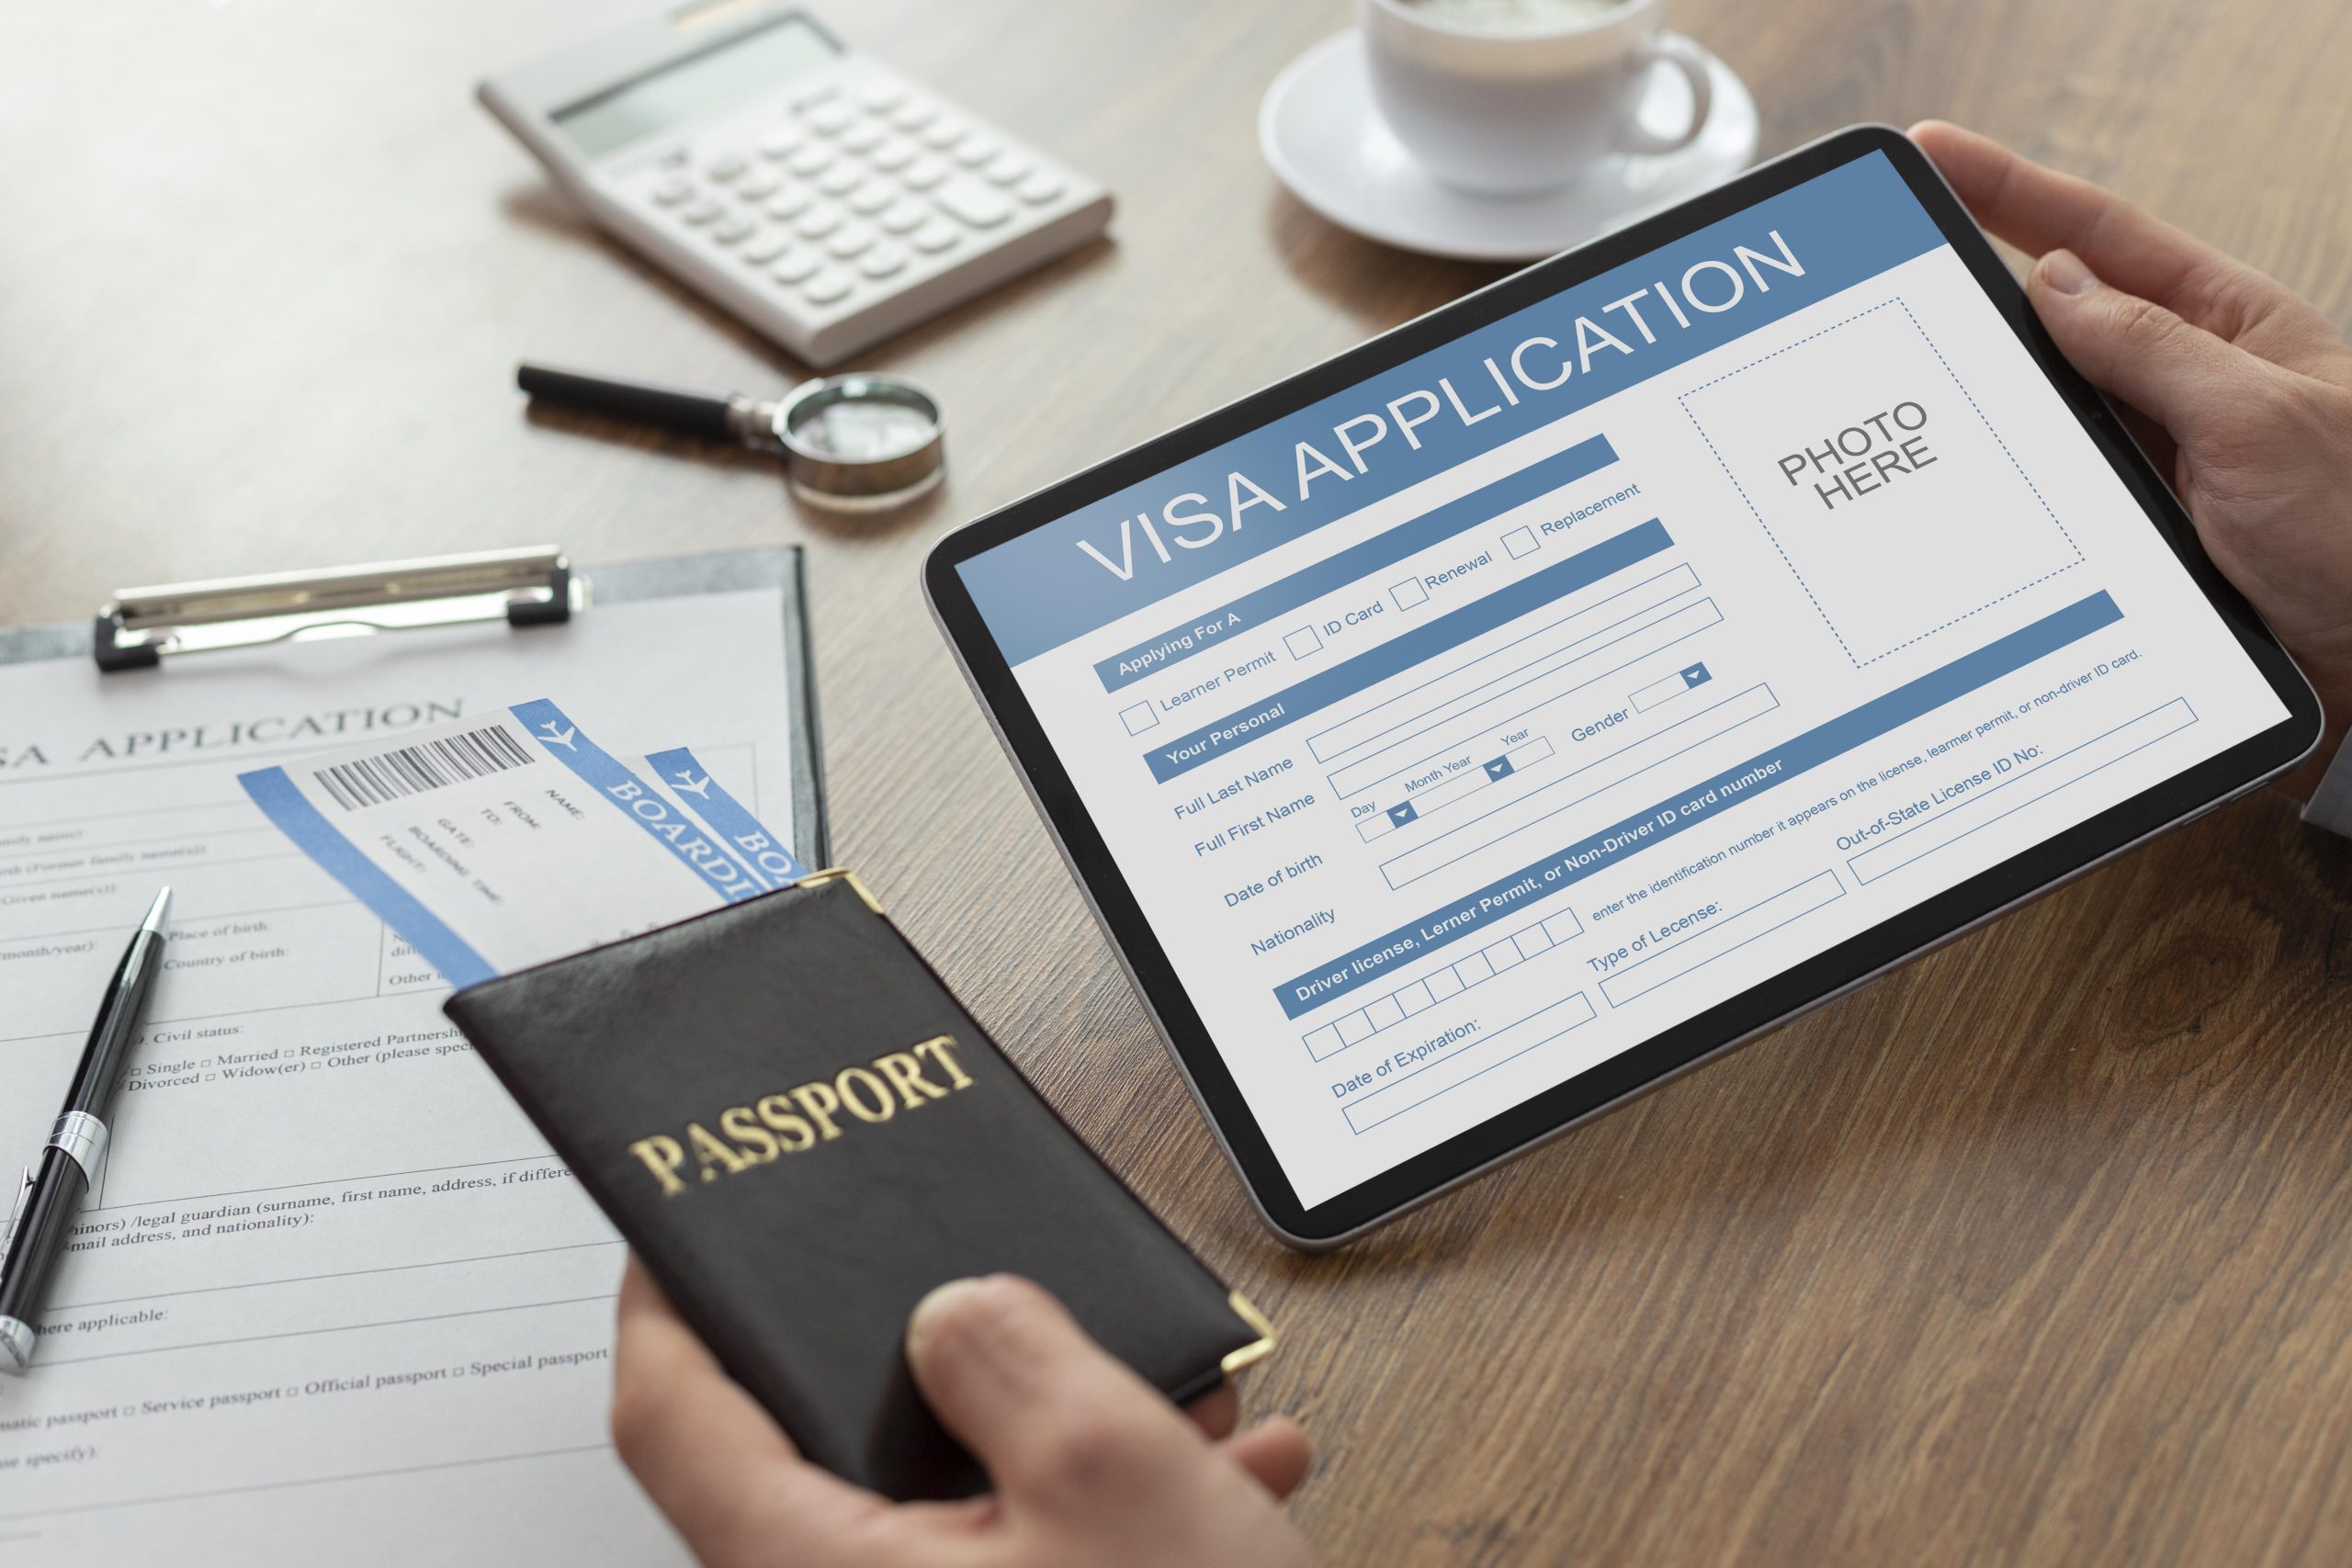 مشاوره ویزای امریکا برای افرادی که می خواهند ویزای امریکا دریافت کنند ضروری است. روند درخواست ویزا می تواند پیچیده و طاقت فرسا باشد و بدون راهنمایی متخصصان در این زمینه، می تواند چالش برانگیز باشد.